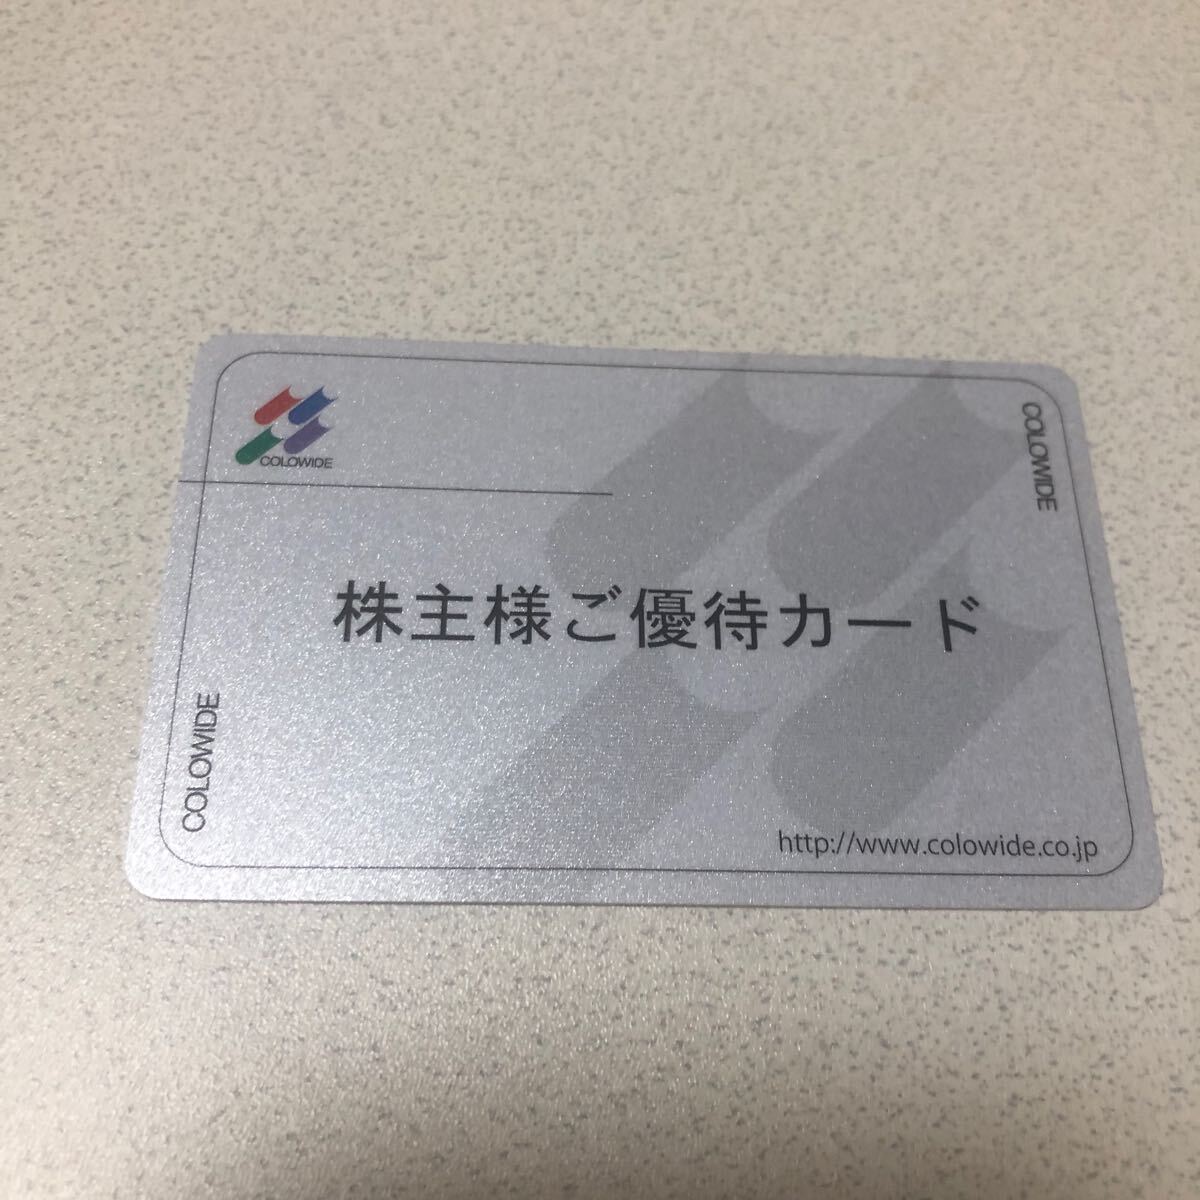 コロワイド 株主優待カード 20000円分 返却不要の画像1